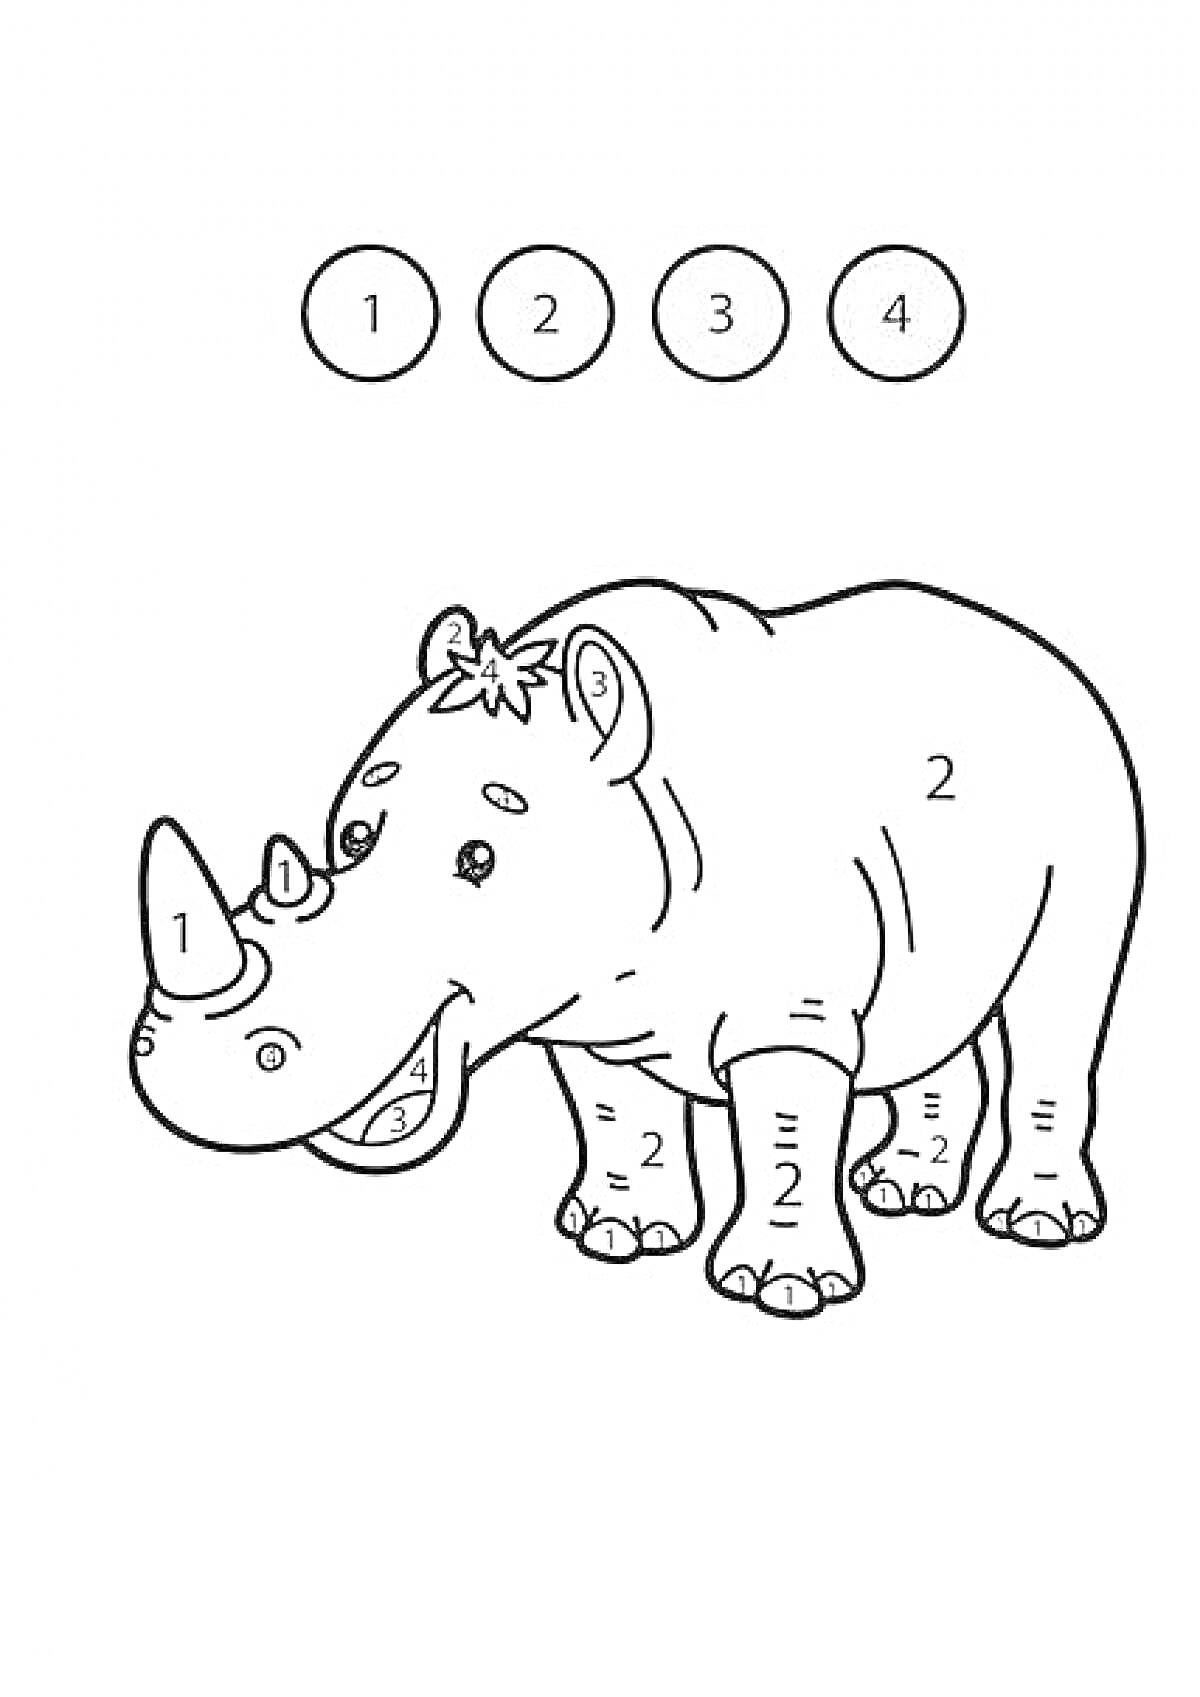 Раскраска математическая. Носорог с обозначением чисел для выбора цвета (1 - голубой, 2 - зеленый, 3 - розовый, 4 - коричневый)